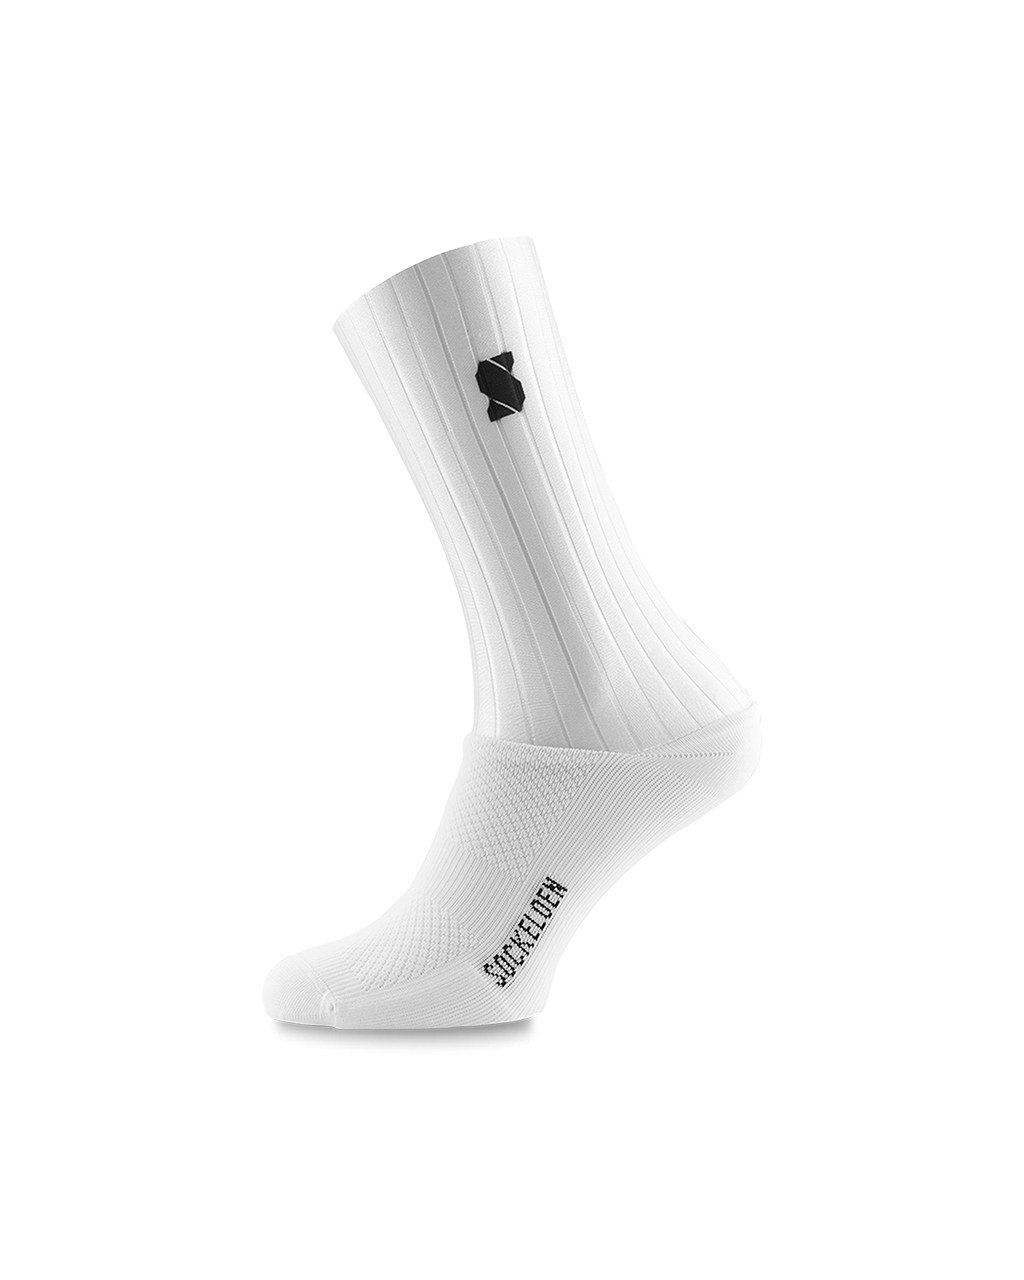 white-sockeloen-aero-cycling-socks-3-pack